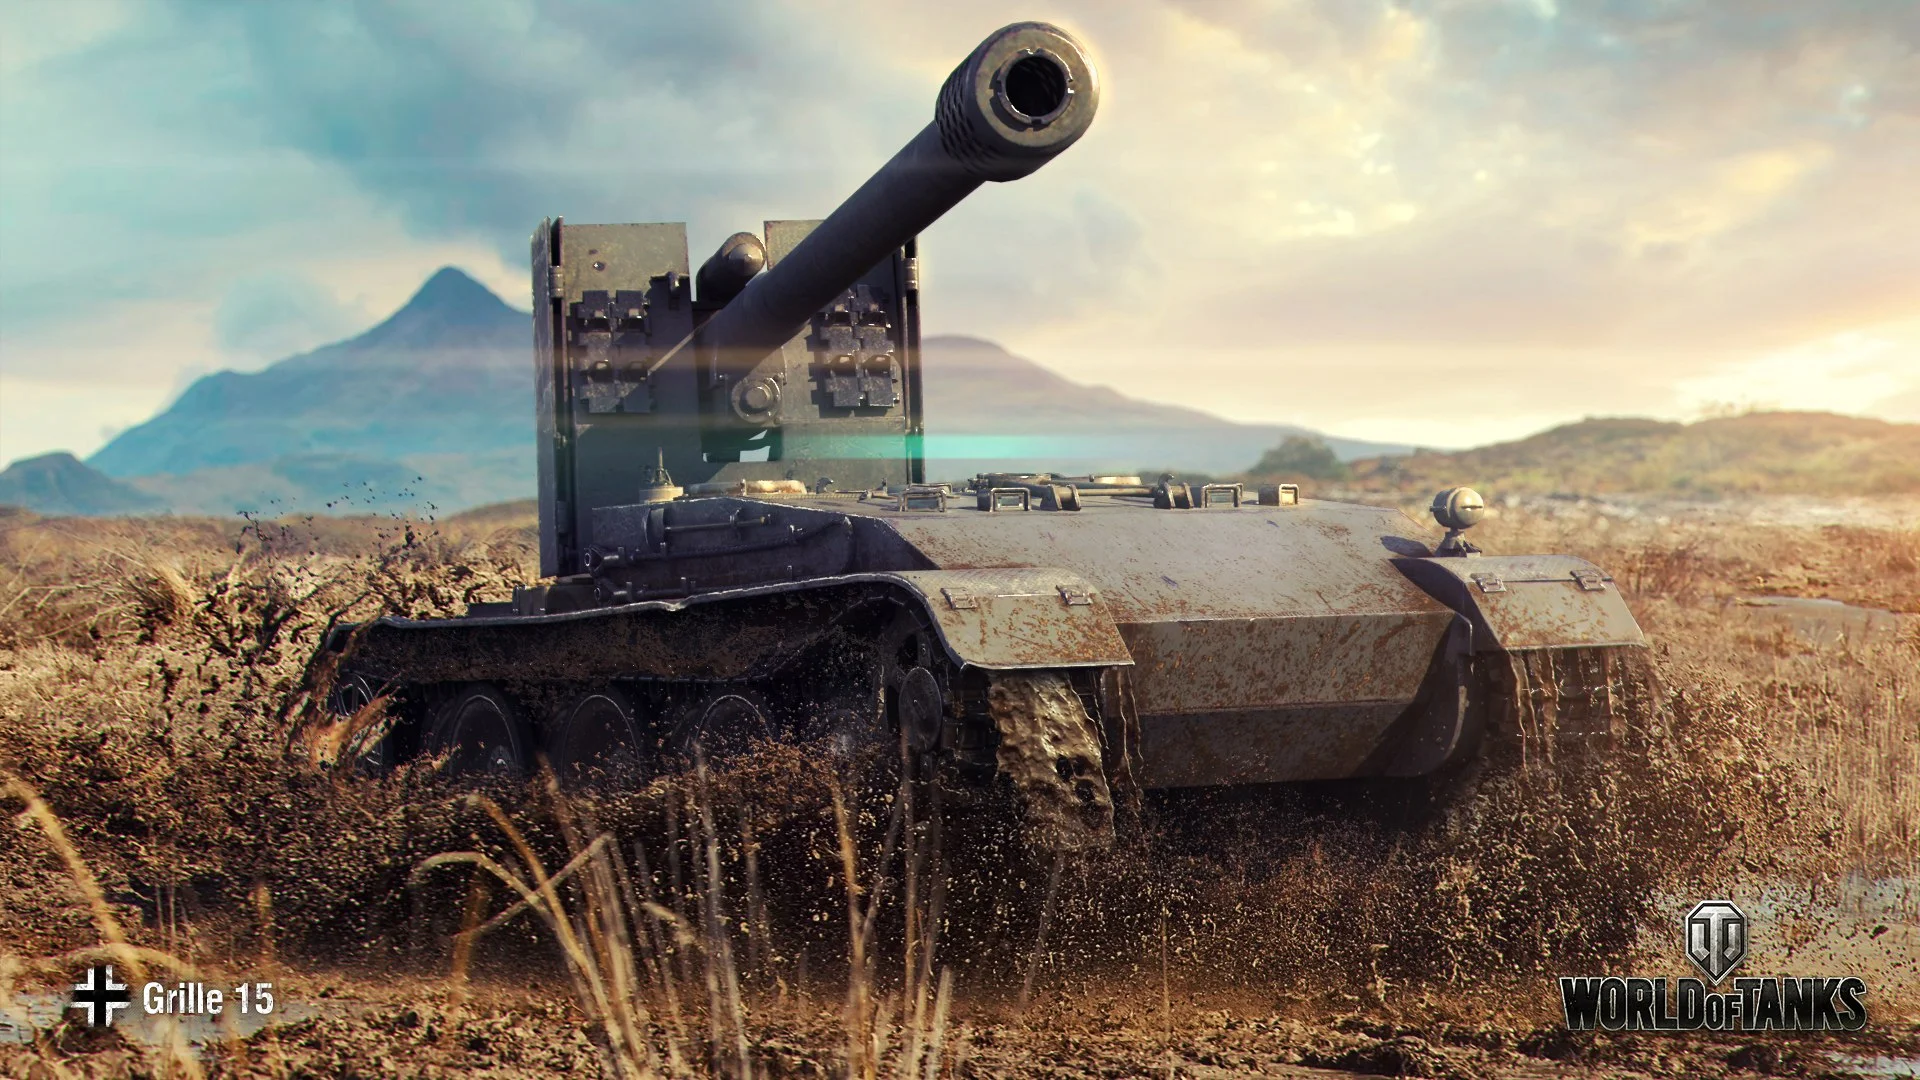 Гайд по World of Tanks 1.0. 5 лучших прокачиваемых ПТ-САУ 10 уровня - фото 3